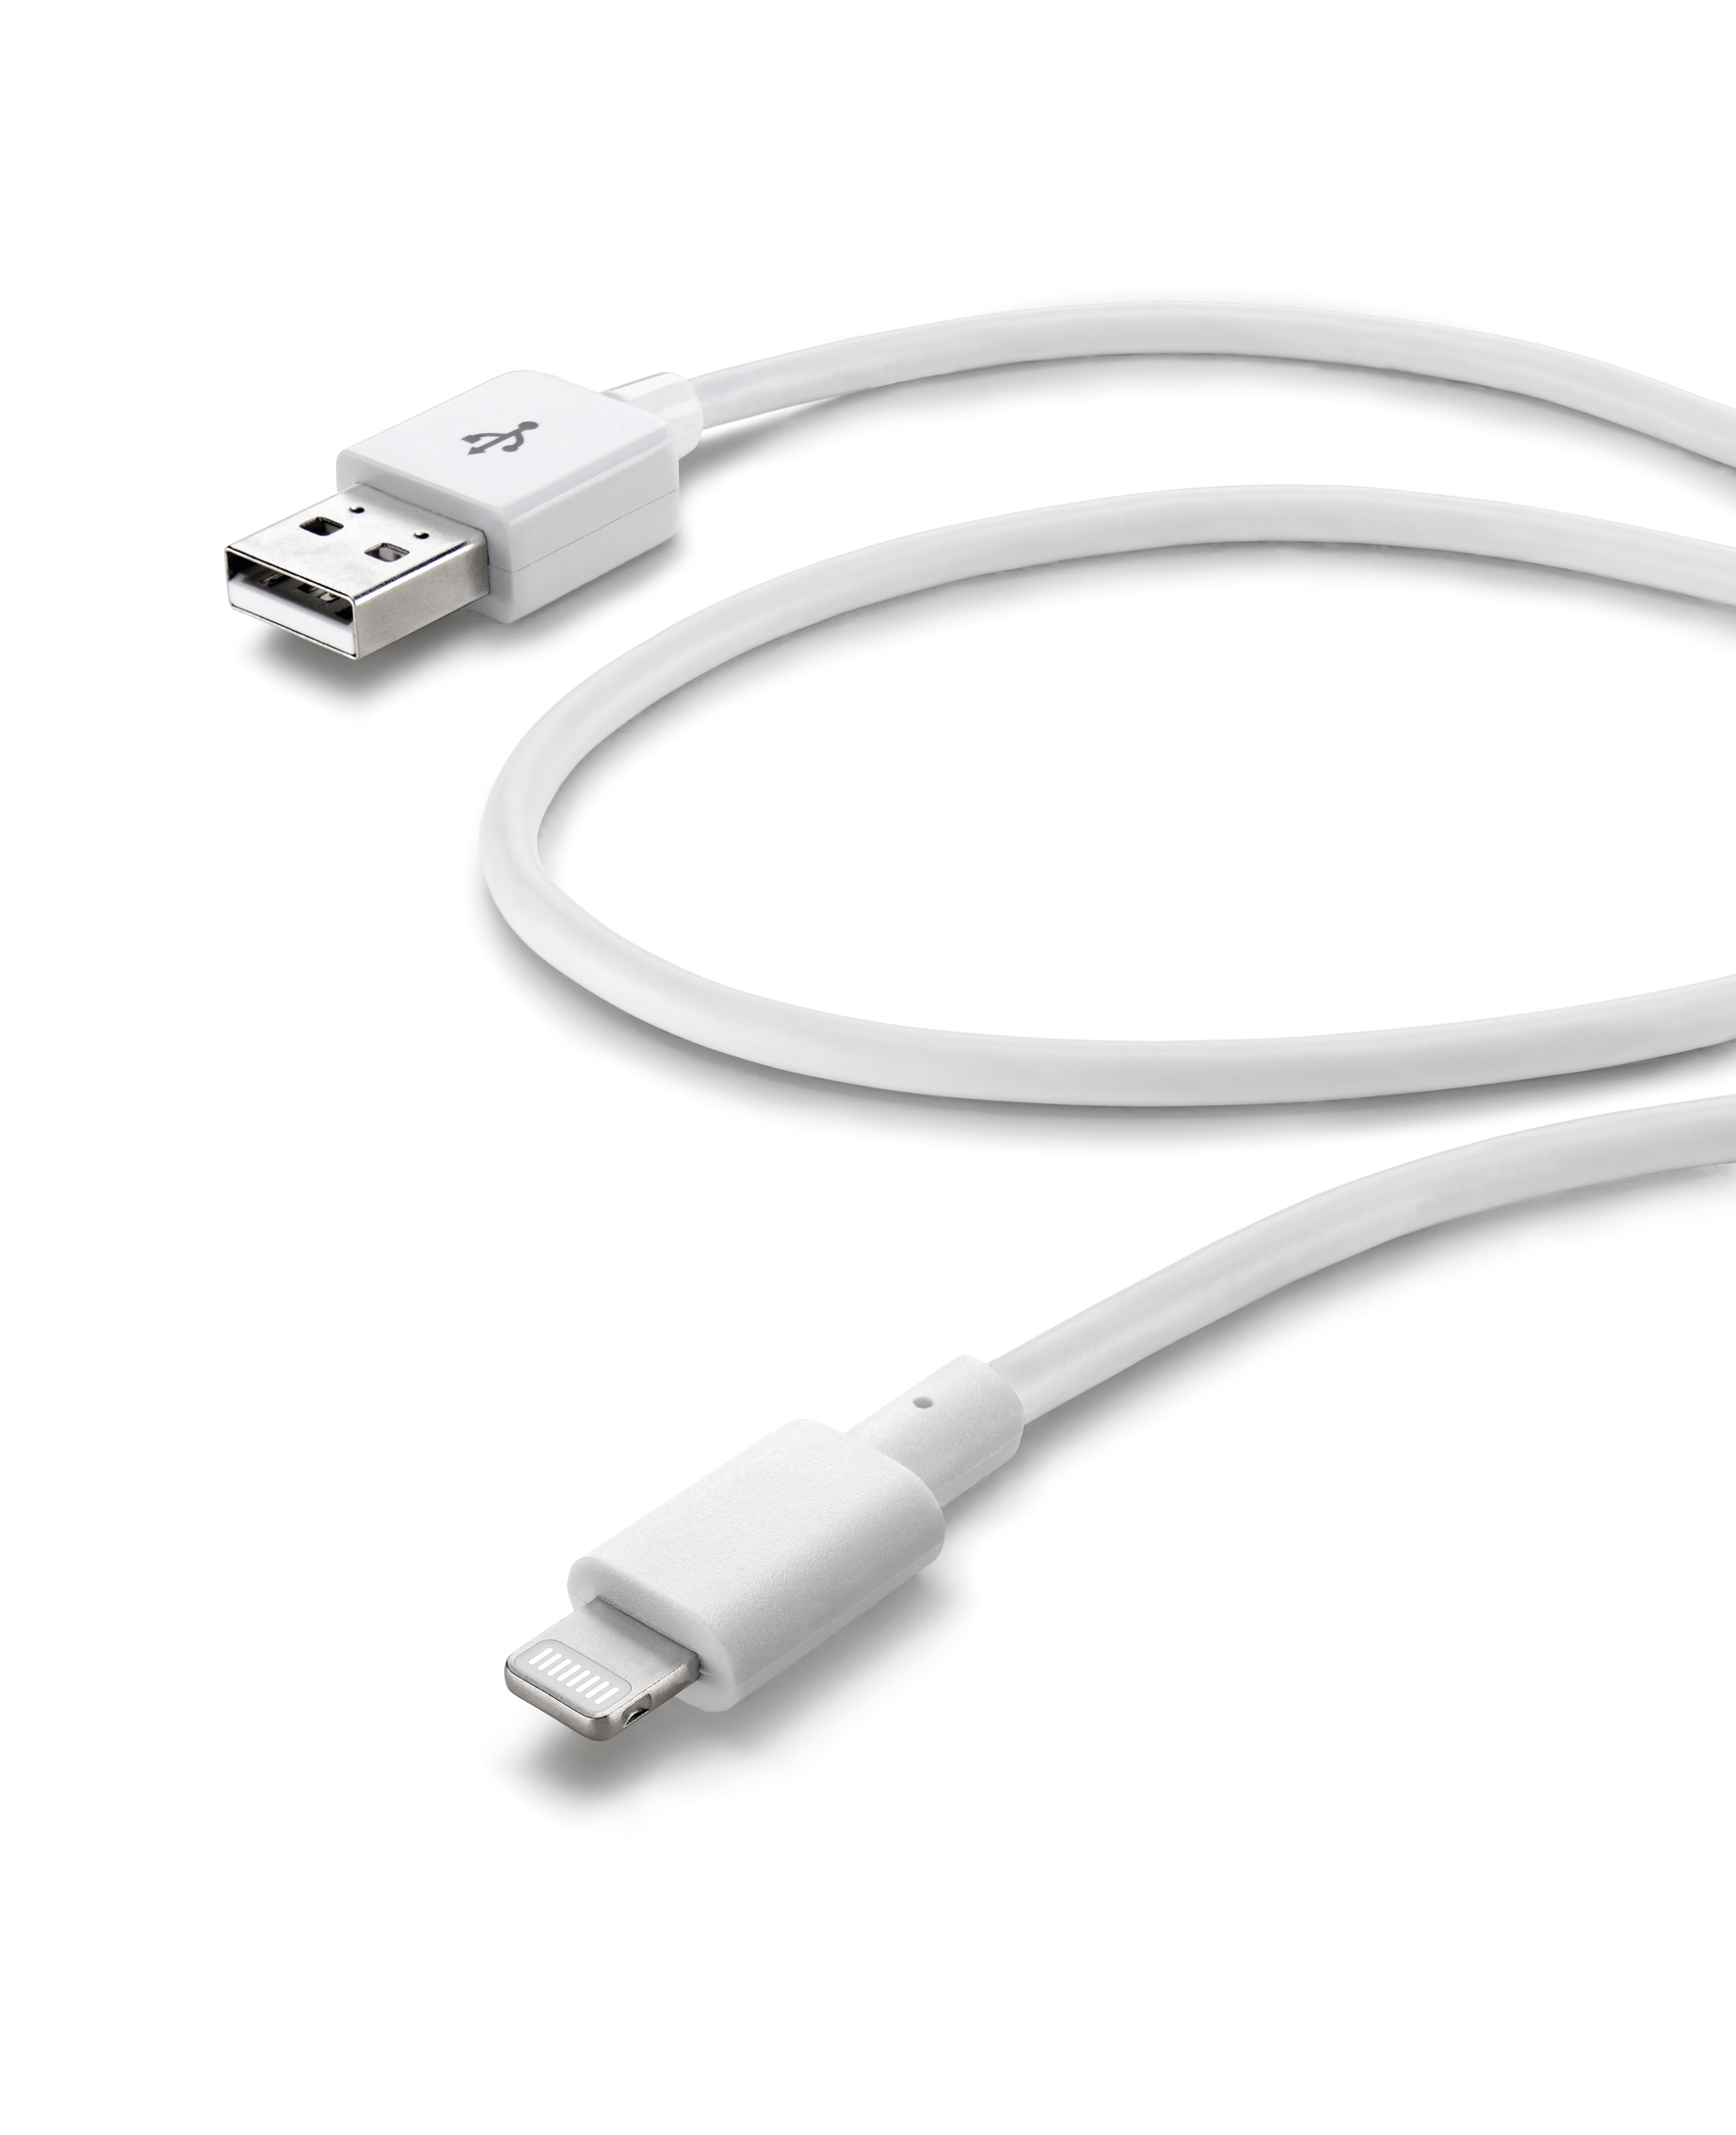 Data cable, Apple lightning, white